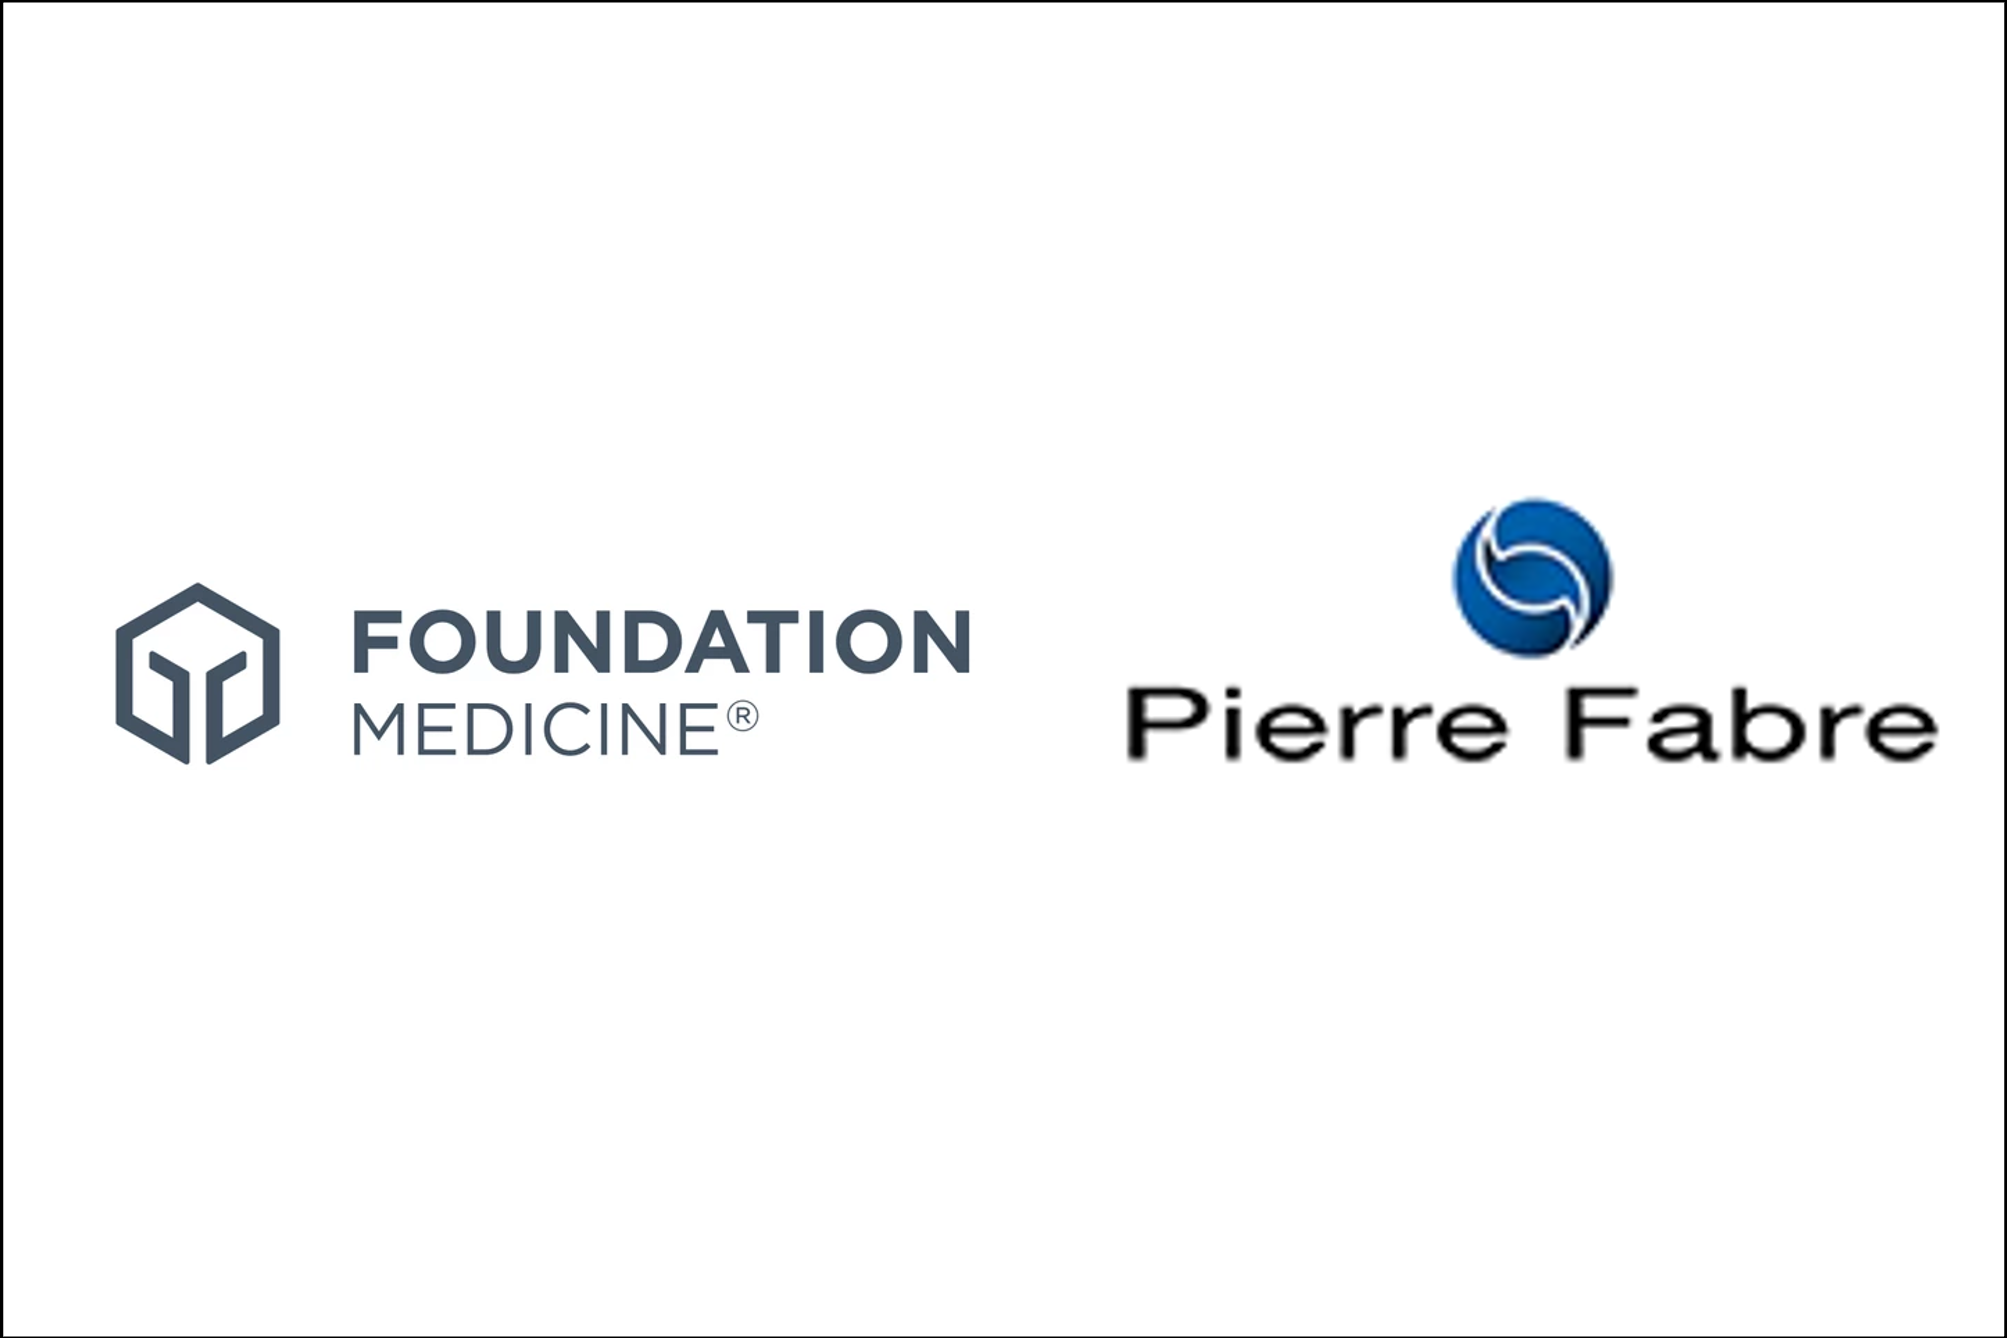 Foundation Medicine Announces Collaboration with Pierre Fabre Laboratories to Develop Companion Diagnostics in Non-Small Cell Lung Cancer